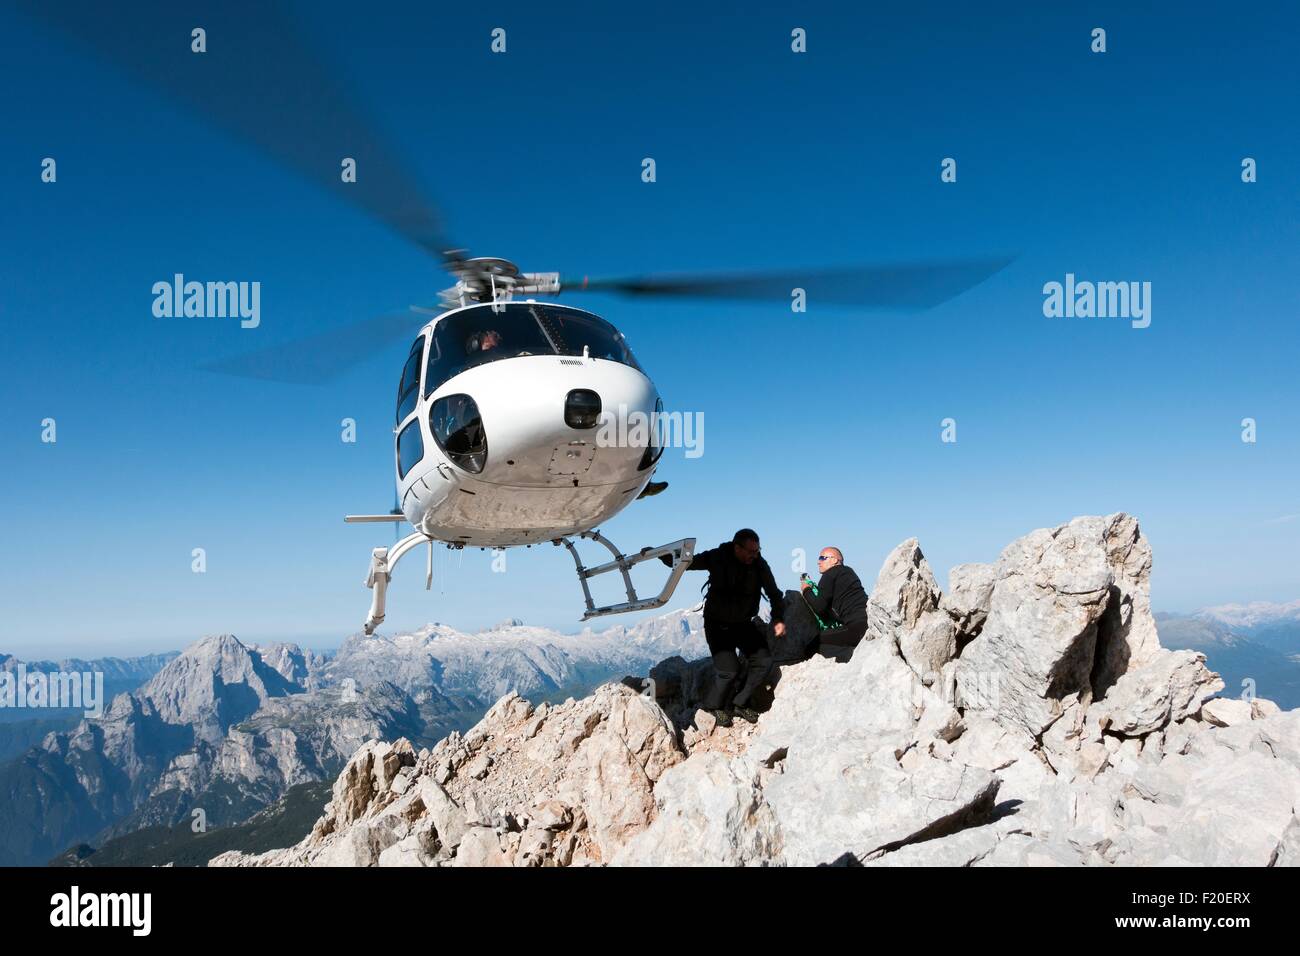 BASE hélicoptère laissant tomber les cavaliers de montagne, Dolomites, Italie Banque D'Images